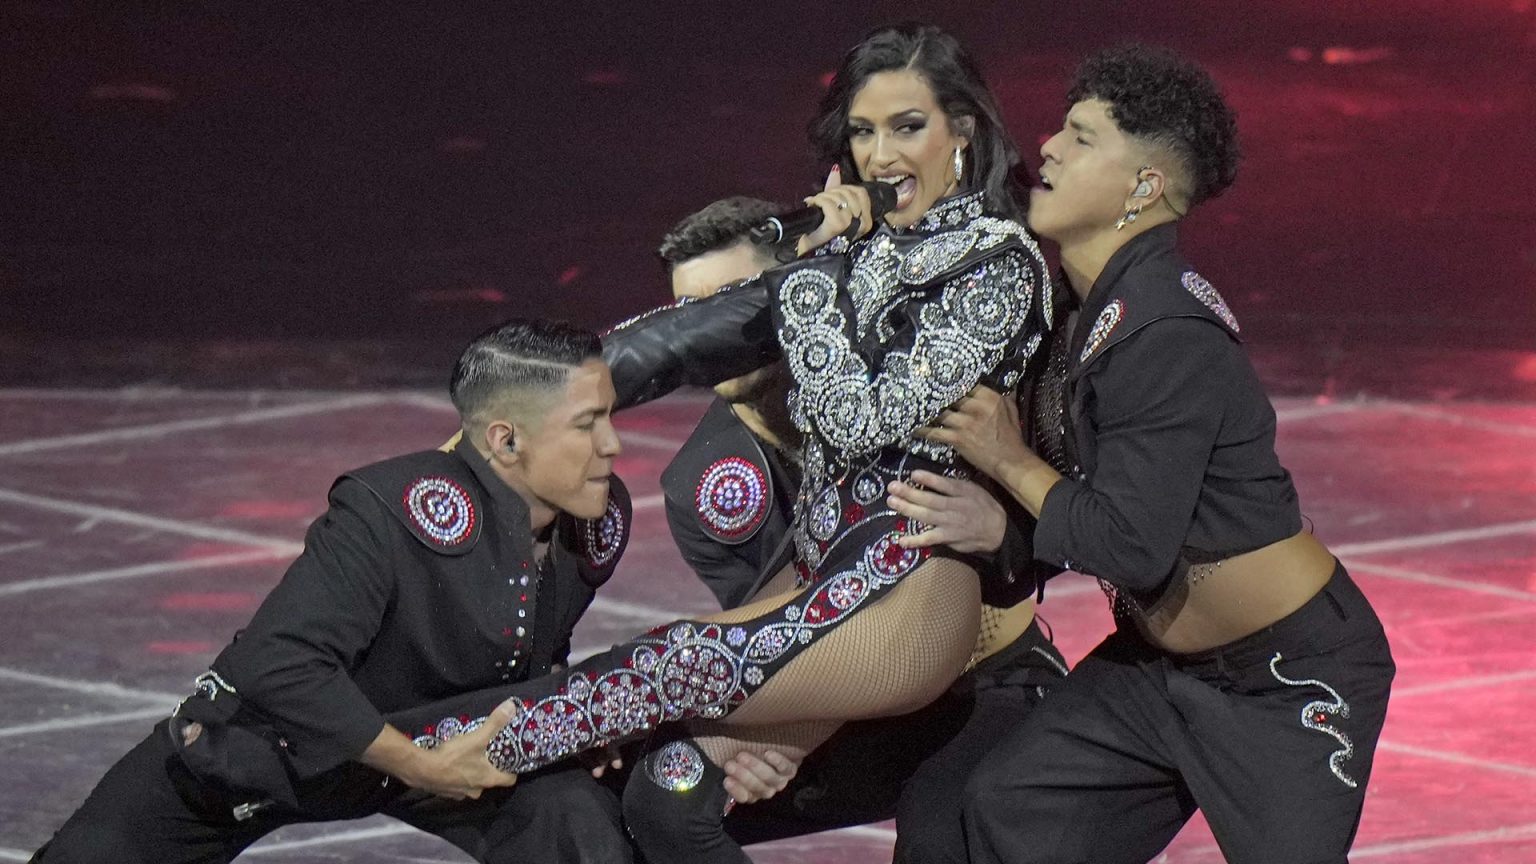 Los famosos elogian la actuación de Chanel en Eurovisión